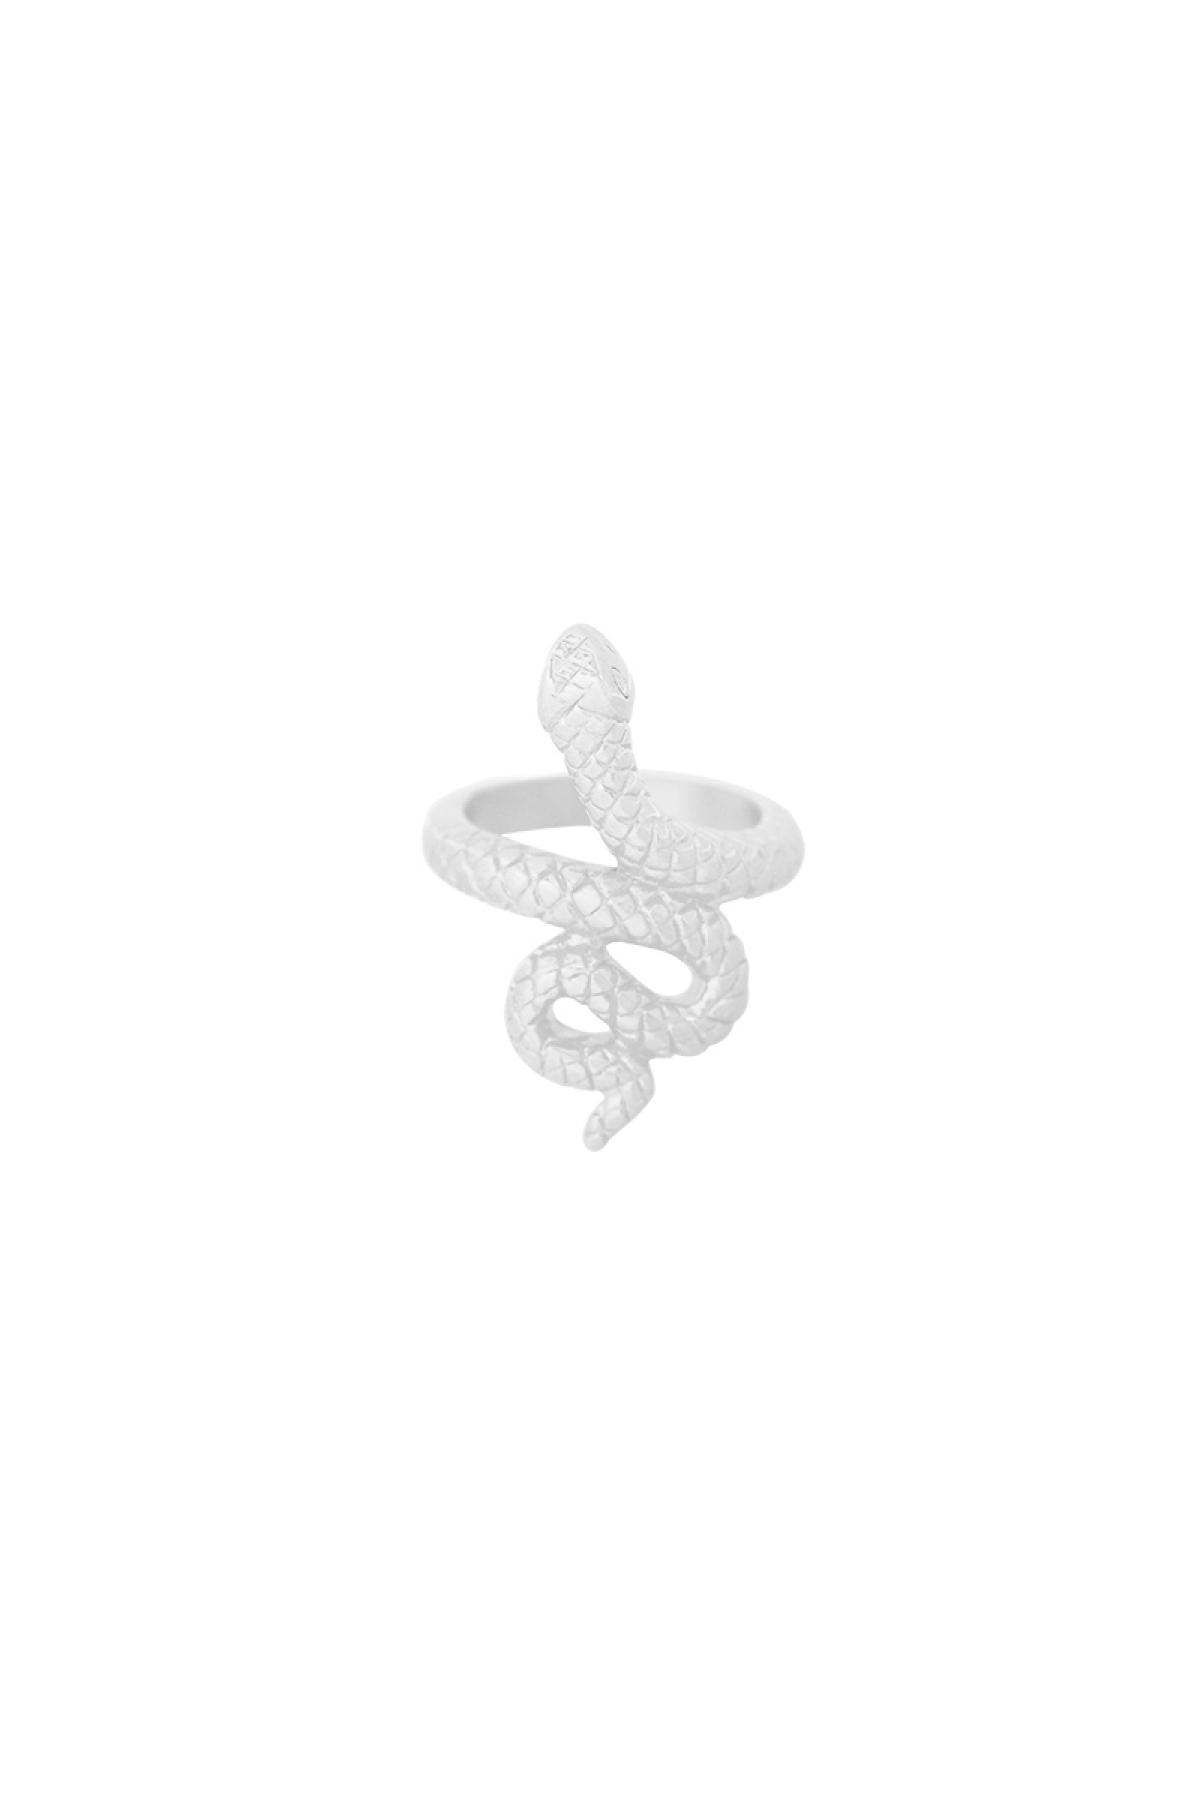 Anello a forma di serpente in acciaio inossidabile - Argento - N. 16 